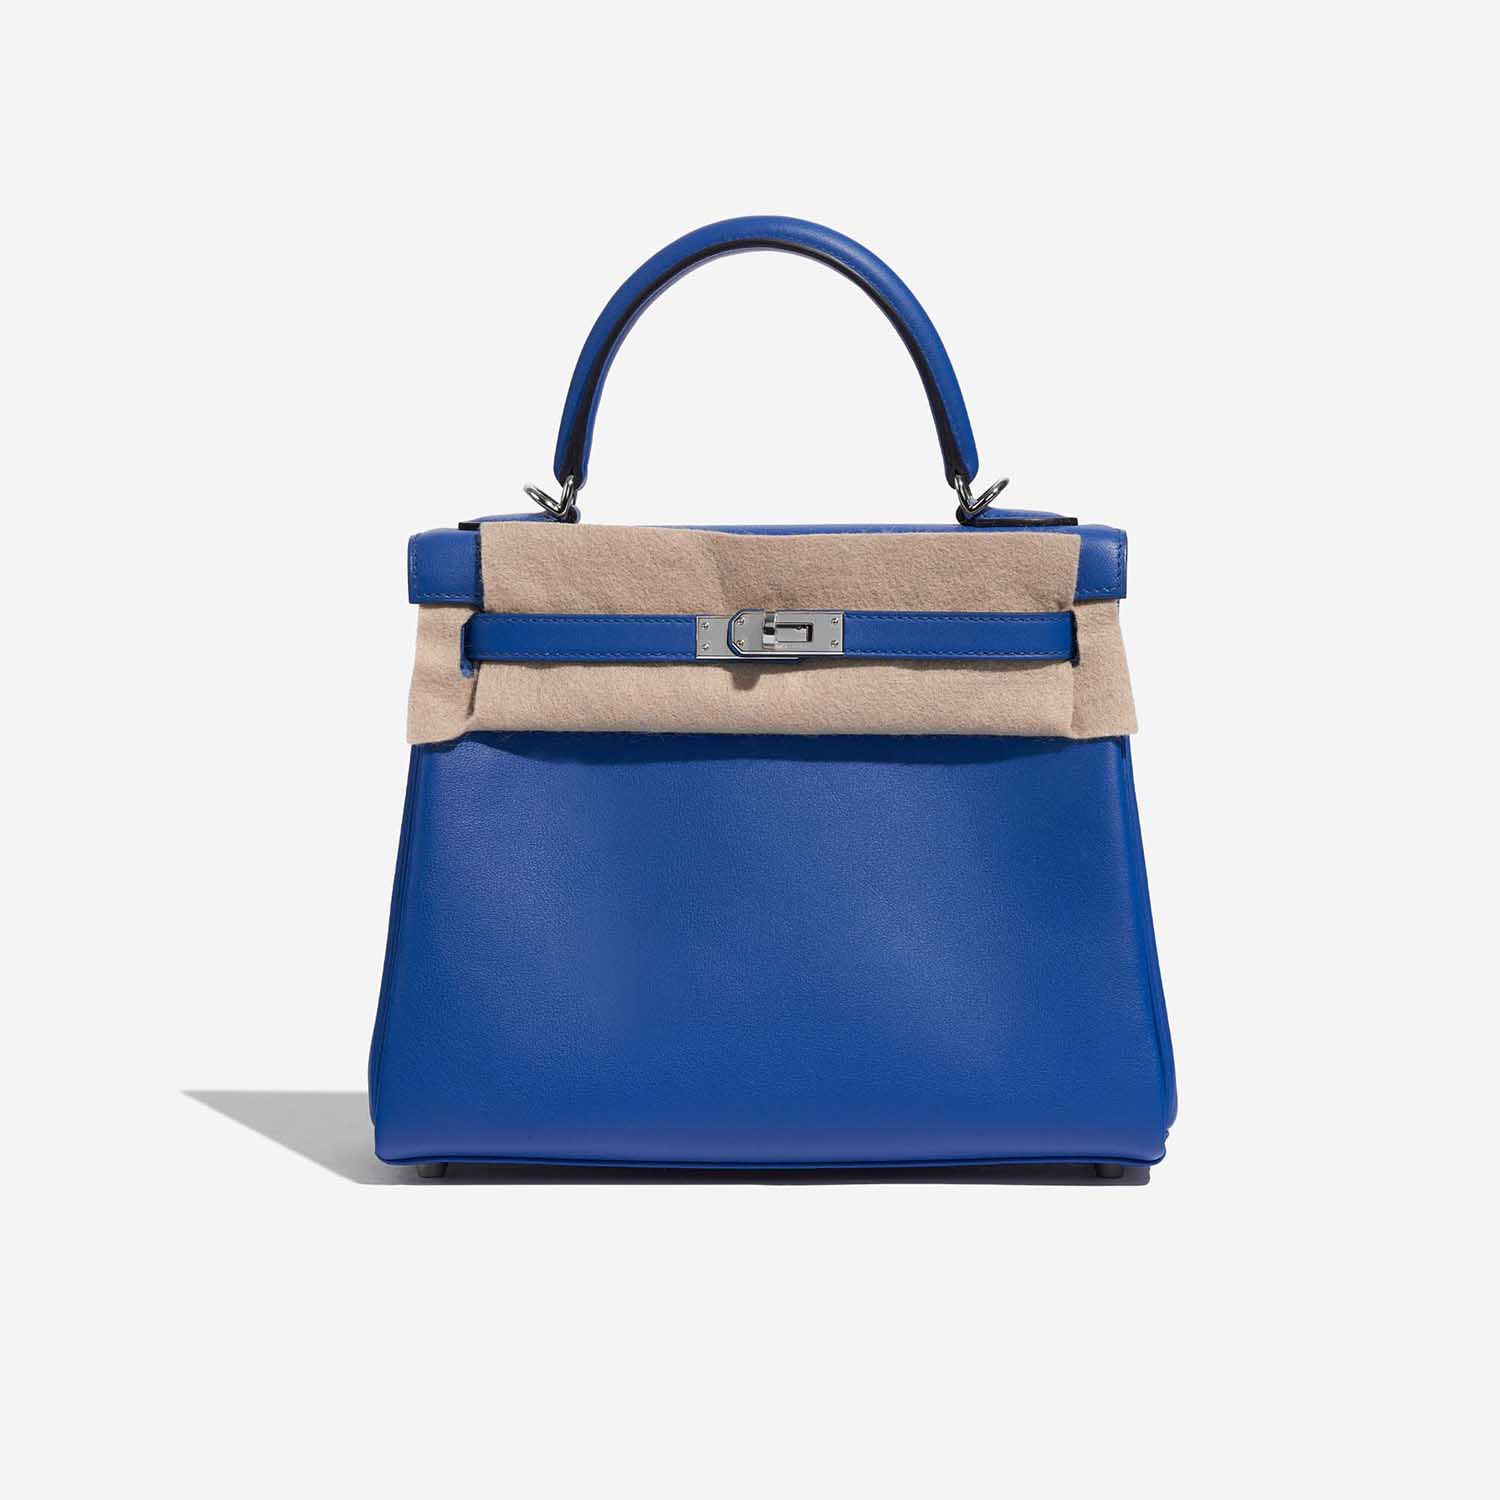 Pre-owned Hermès Tasche Kelly 25 Swift Blau Frankreich Blau Front Velt | Verkaufen Sie Ihre Designer-Tasche auf Saclab.com